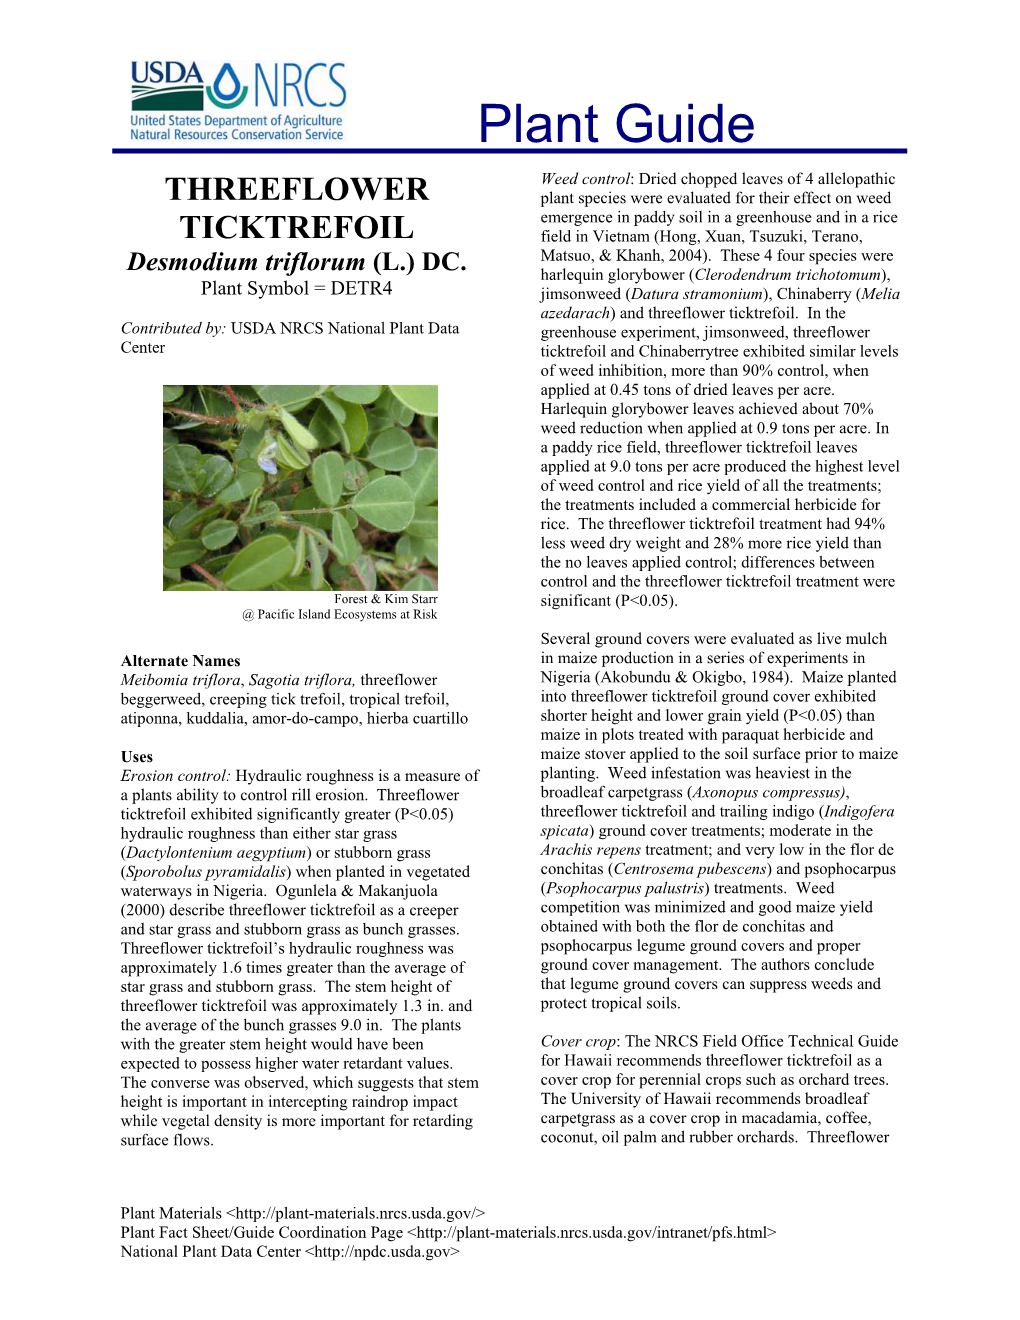 Threeflower Ticktrefoil